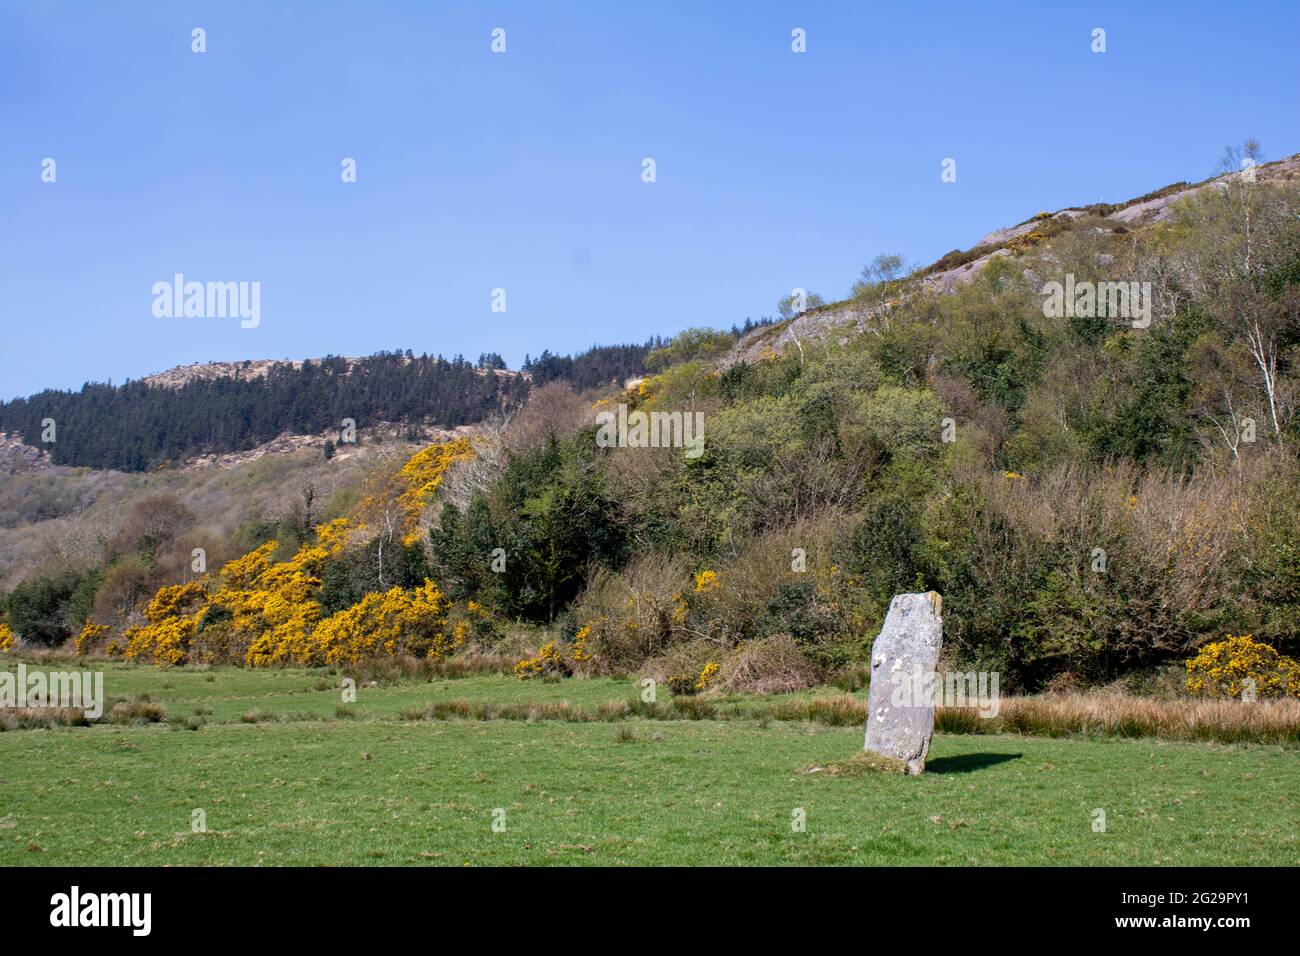 Farnanes en pierre debout Dunmanway West Cork Irlande. On pense que les pierres sur pied sont d'anciens lieux de sépulture et on les trouve dans tous les comtés d'Irlande. Banque D'Images